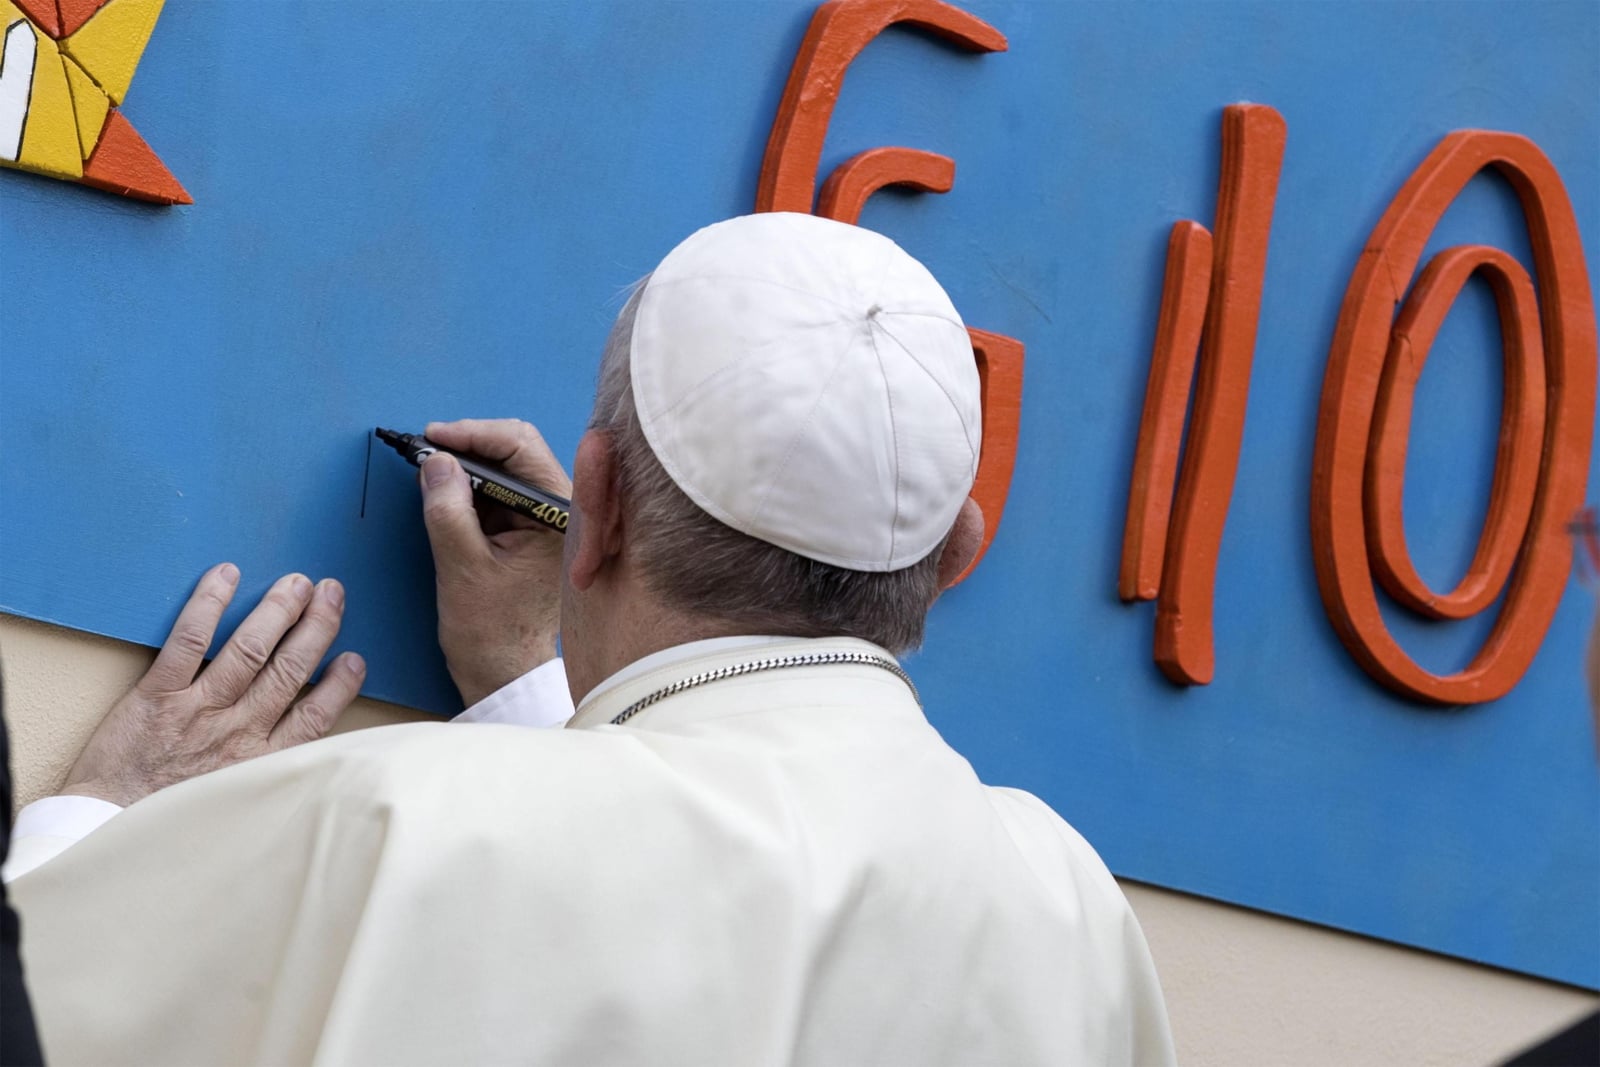 Papież Franciszek zostawił autograf na ścianie podczas wizytowania rzymskiej parafii Najświętszego Sakramentu  EPA/MASSIMO PERCOSSI 